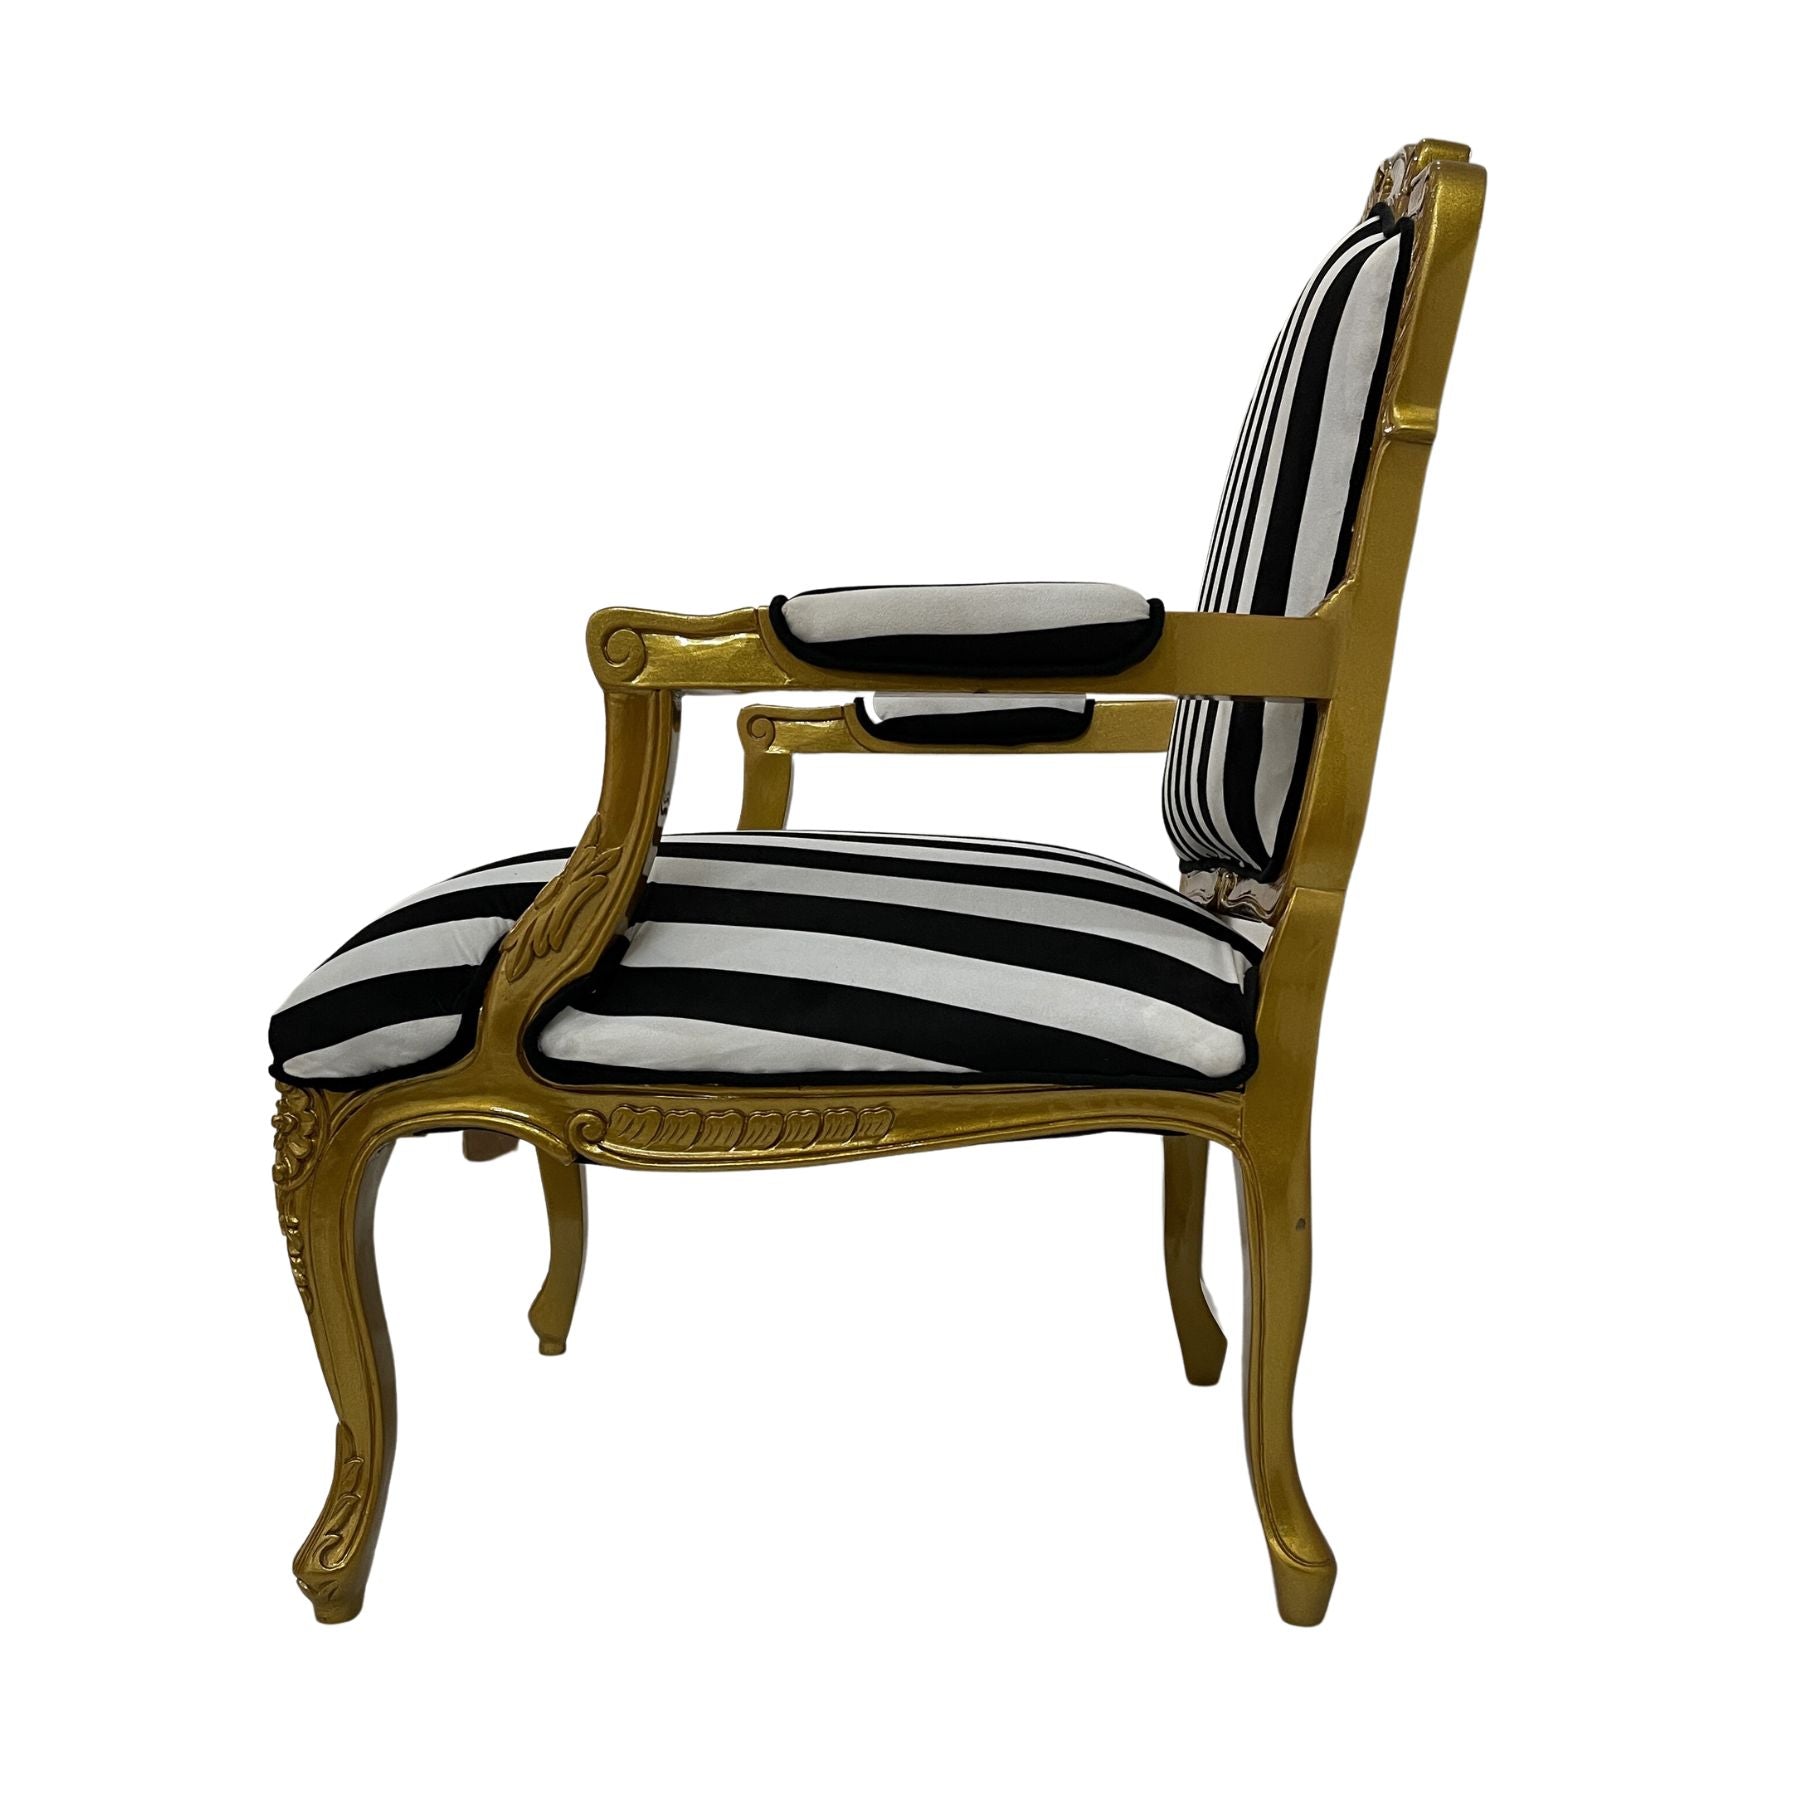 The Maharaja Chair - Black & White